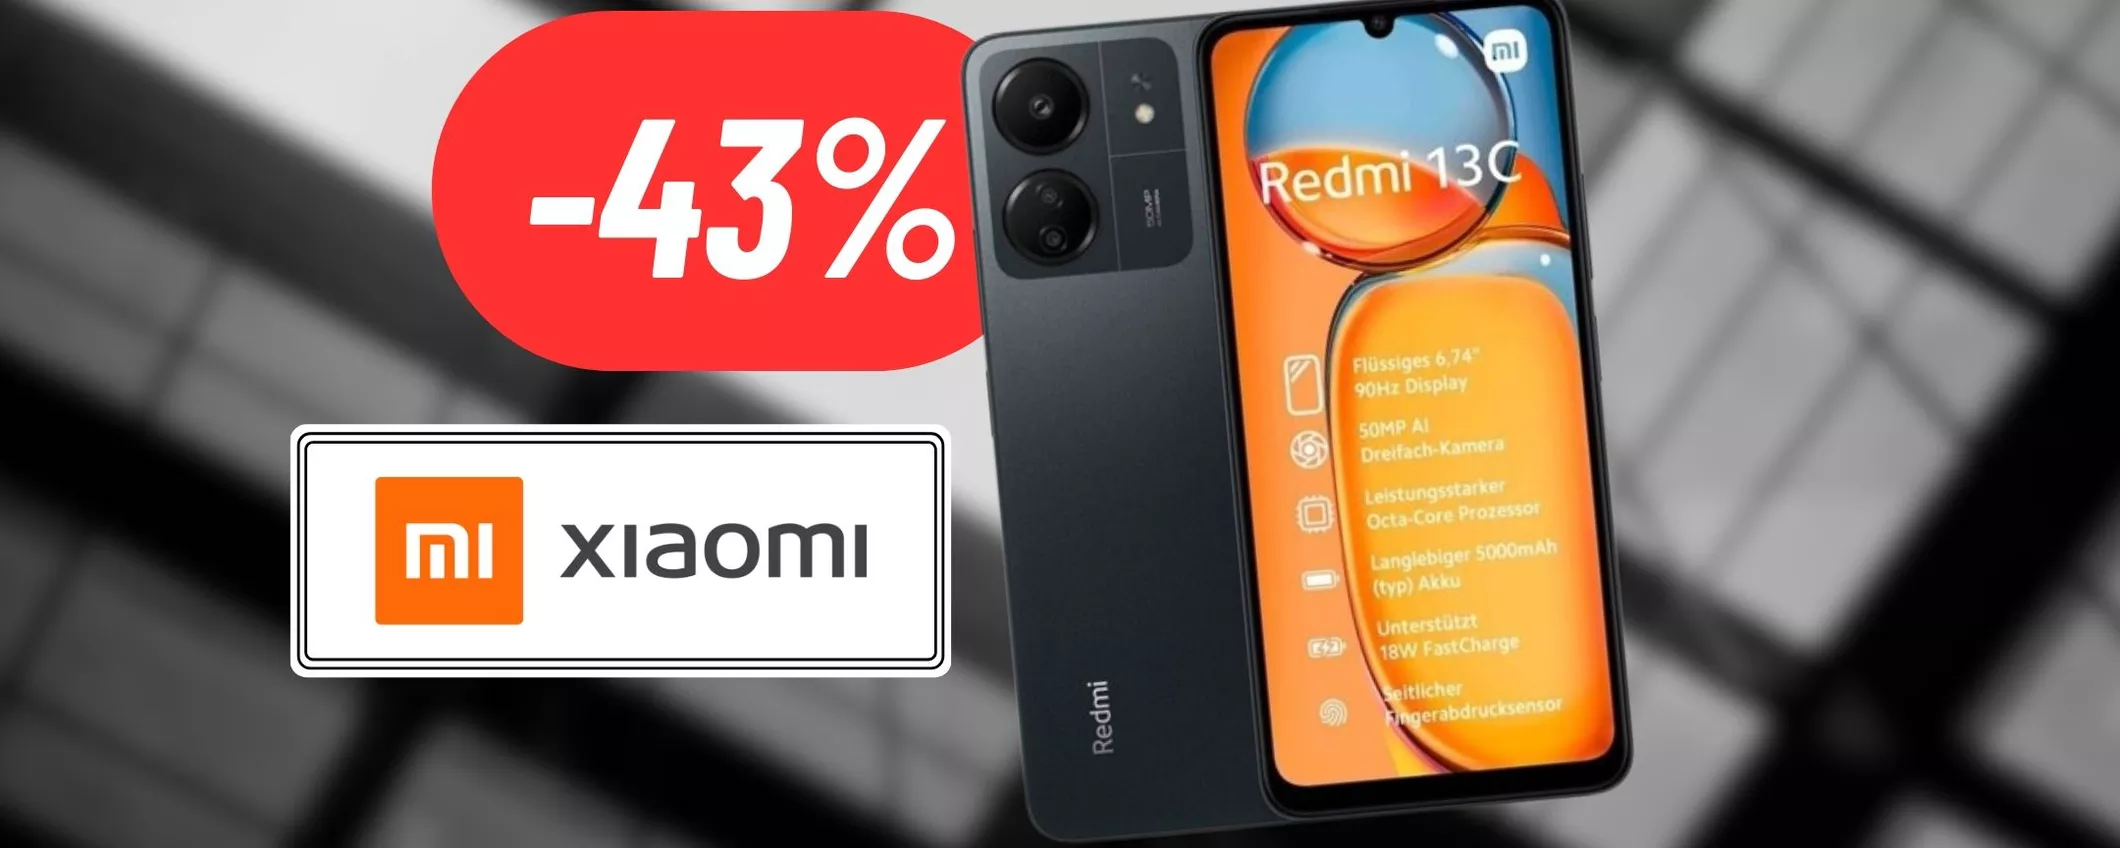 Xiaomi Redmi 13C al 43% di sconto su eBay: OFFERTA IMPERDIBILE